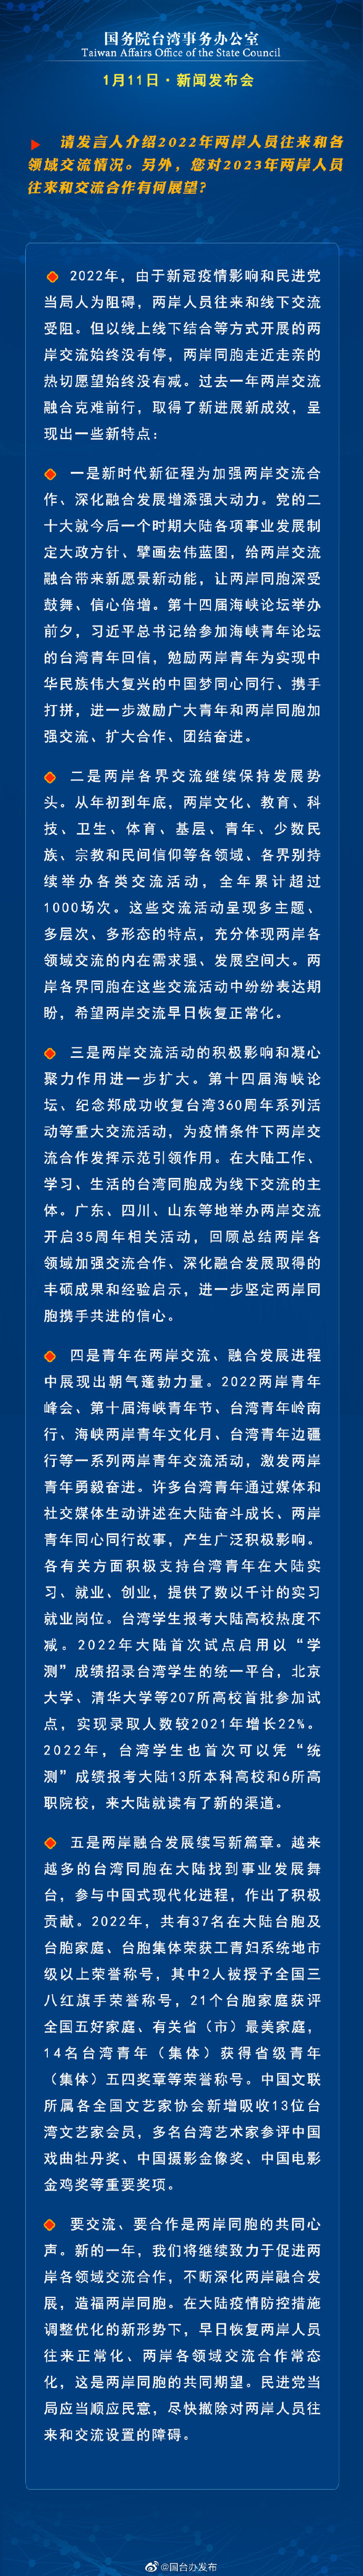 国务院台湾事务办公室1月11日·新闻发布会